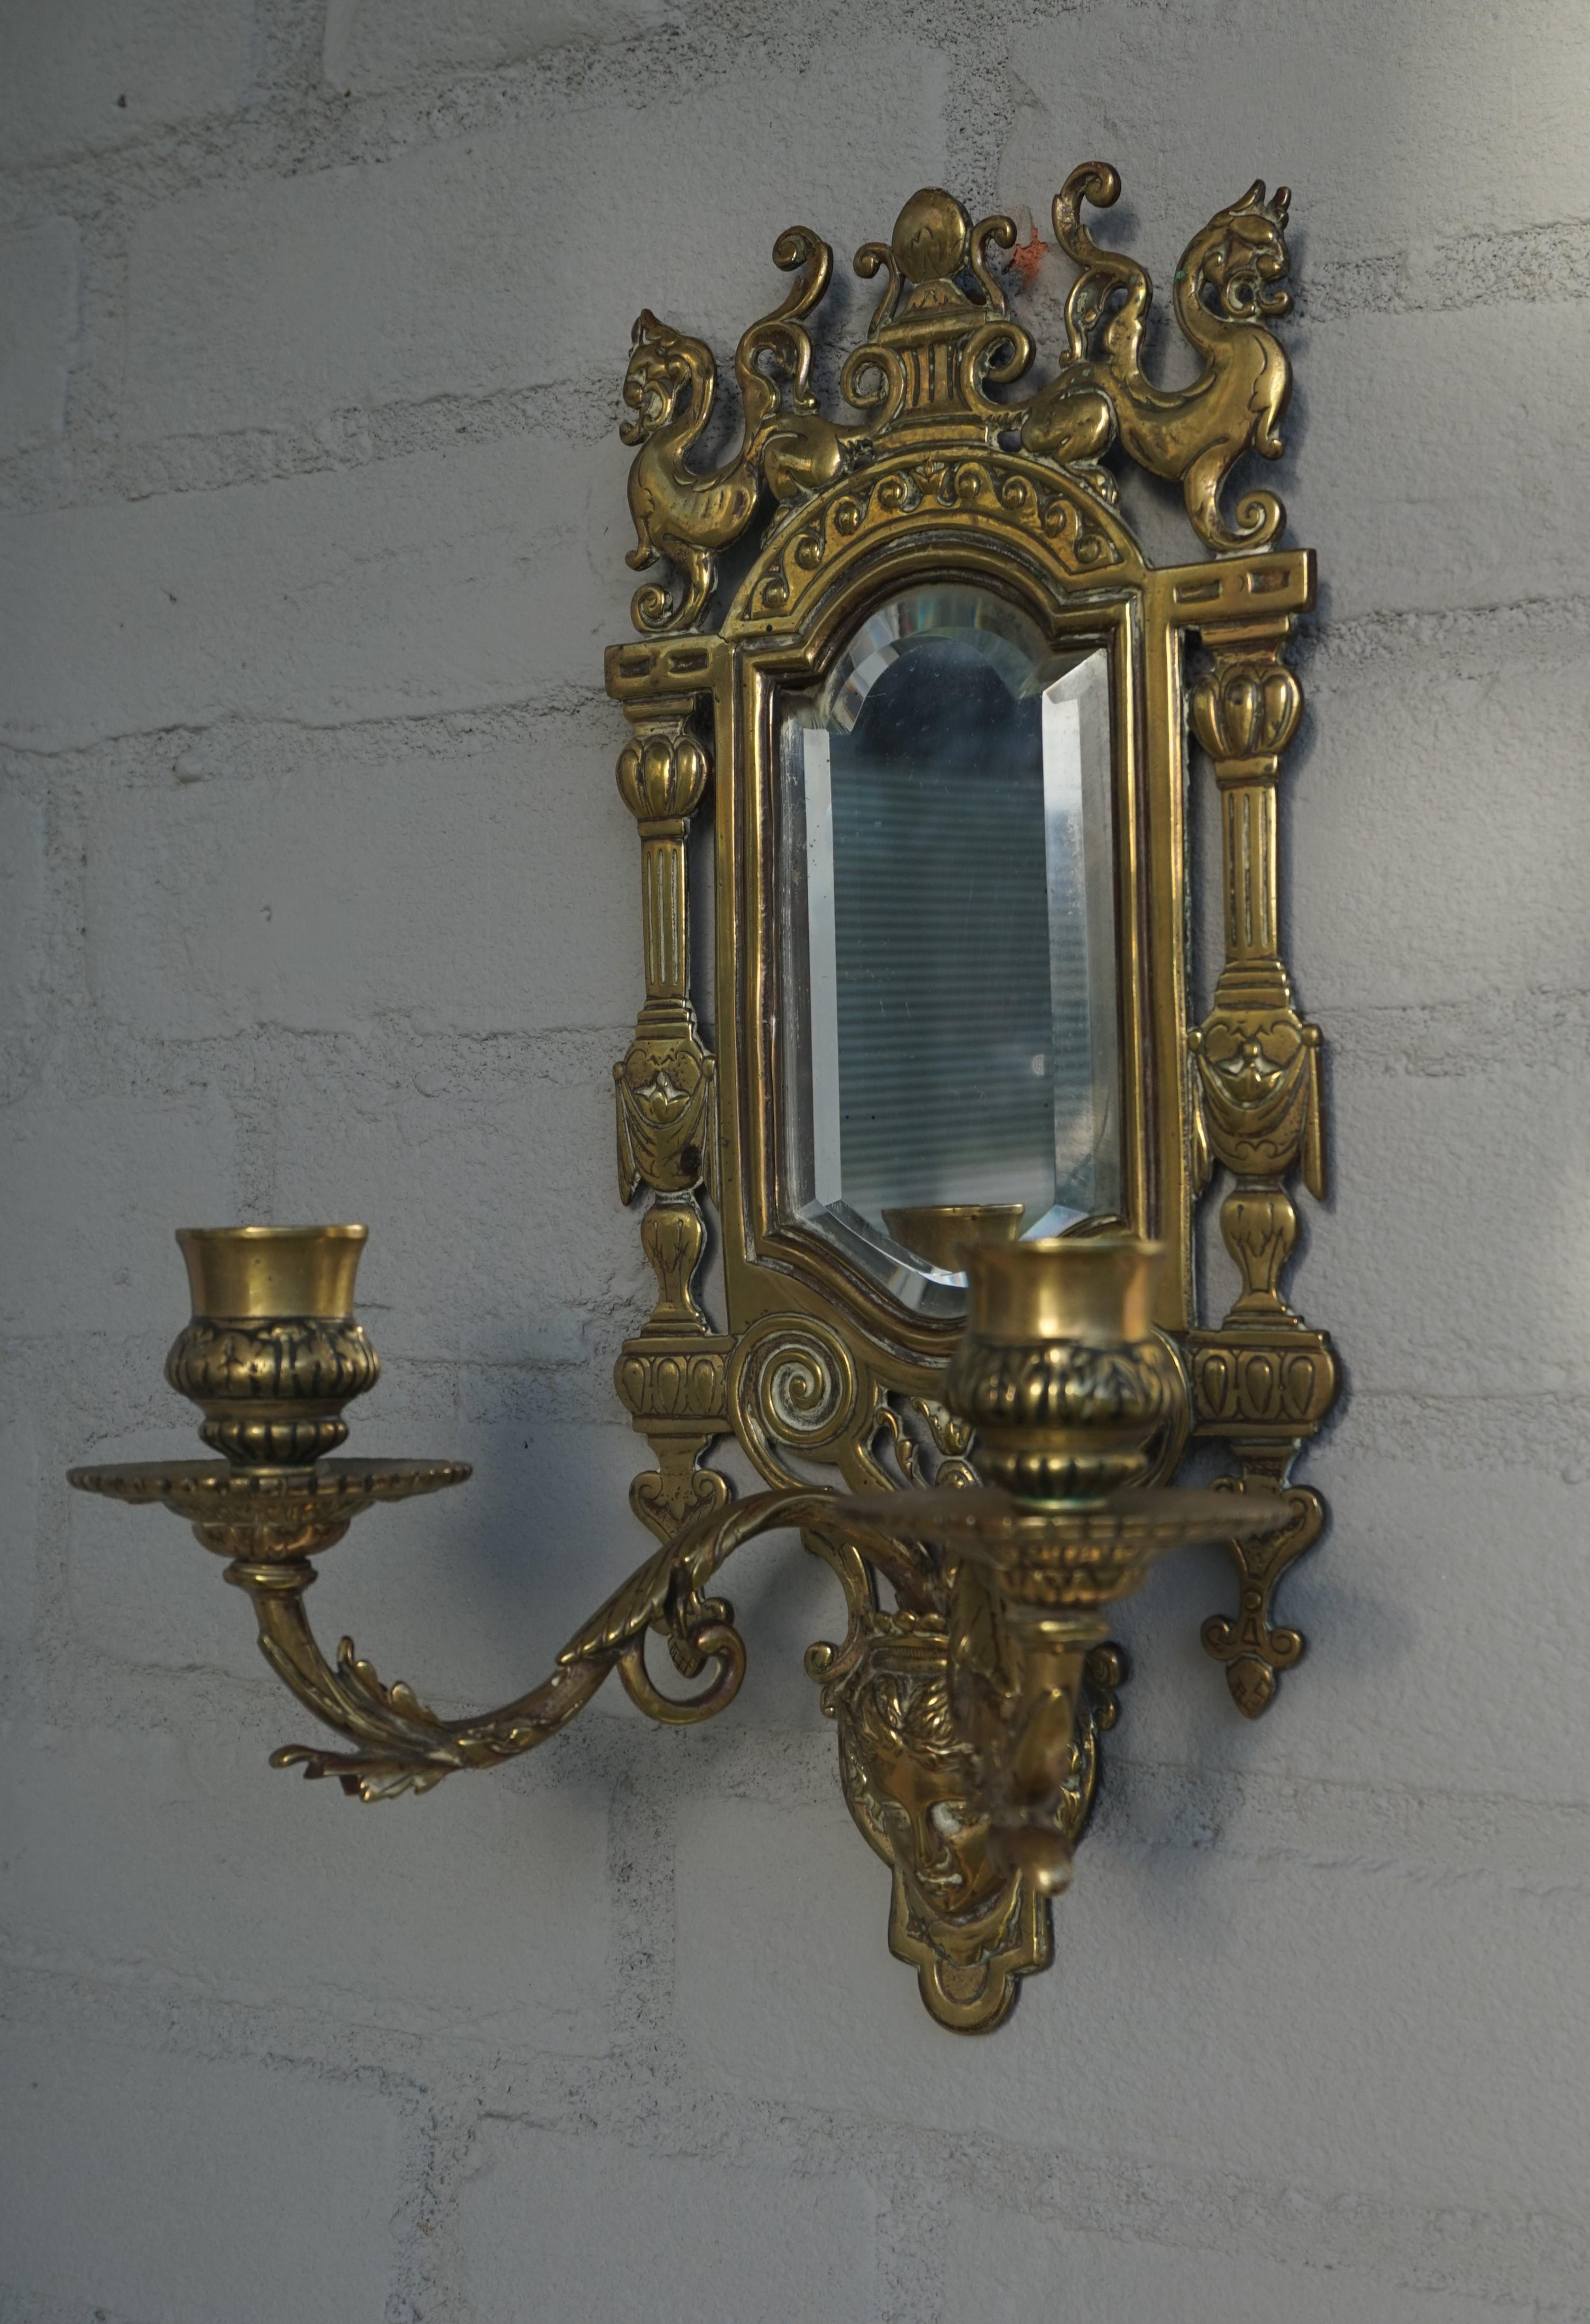 Schönes Design und praktische Größe Paar Kerzenleuchter im Renaissance-Stil.

Dieses antike Paar Bronzewandleuchter sieht über einem Beistelltisch, einem Nachttisch oder in einem Flur auf beiden Seiten eines Spiegels großartig aus. Dieses Paar kommt